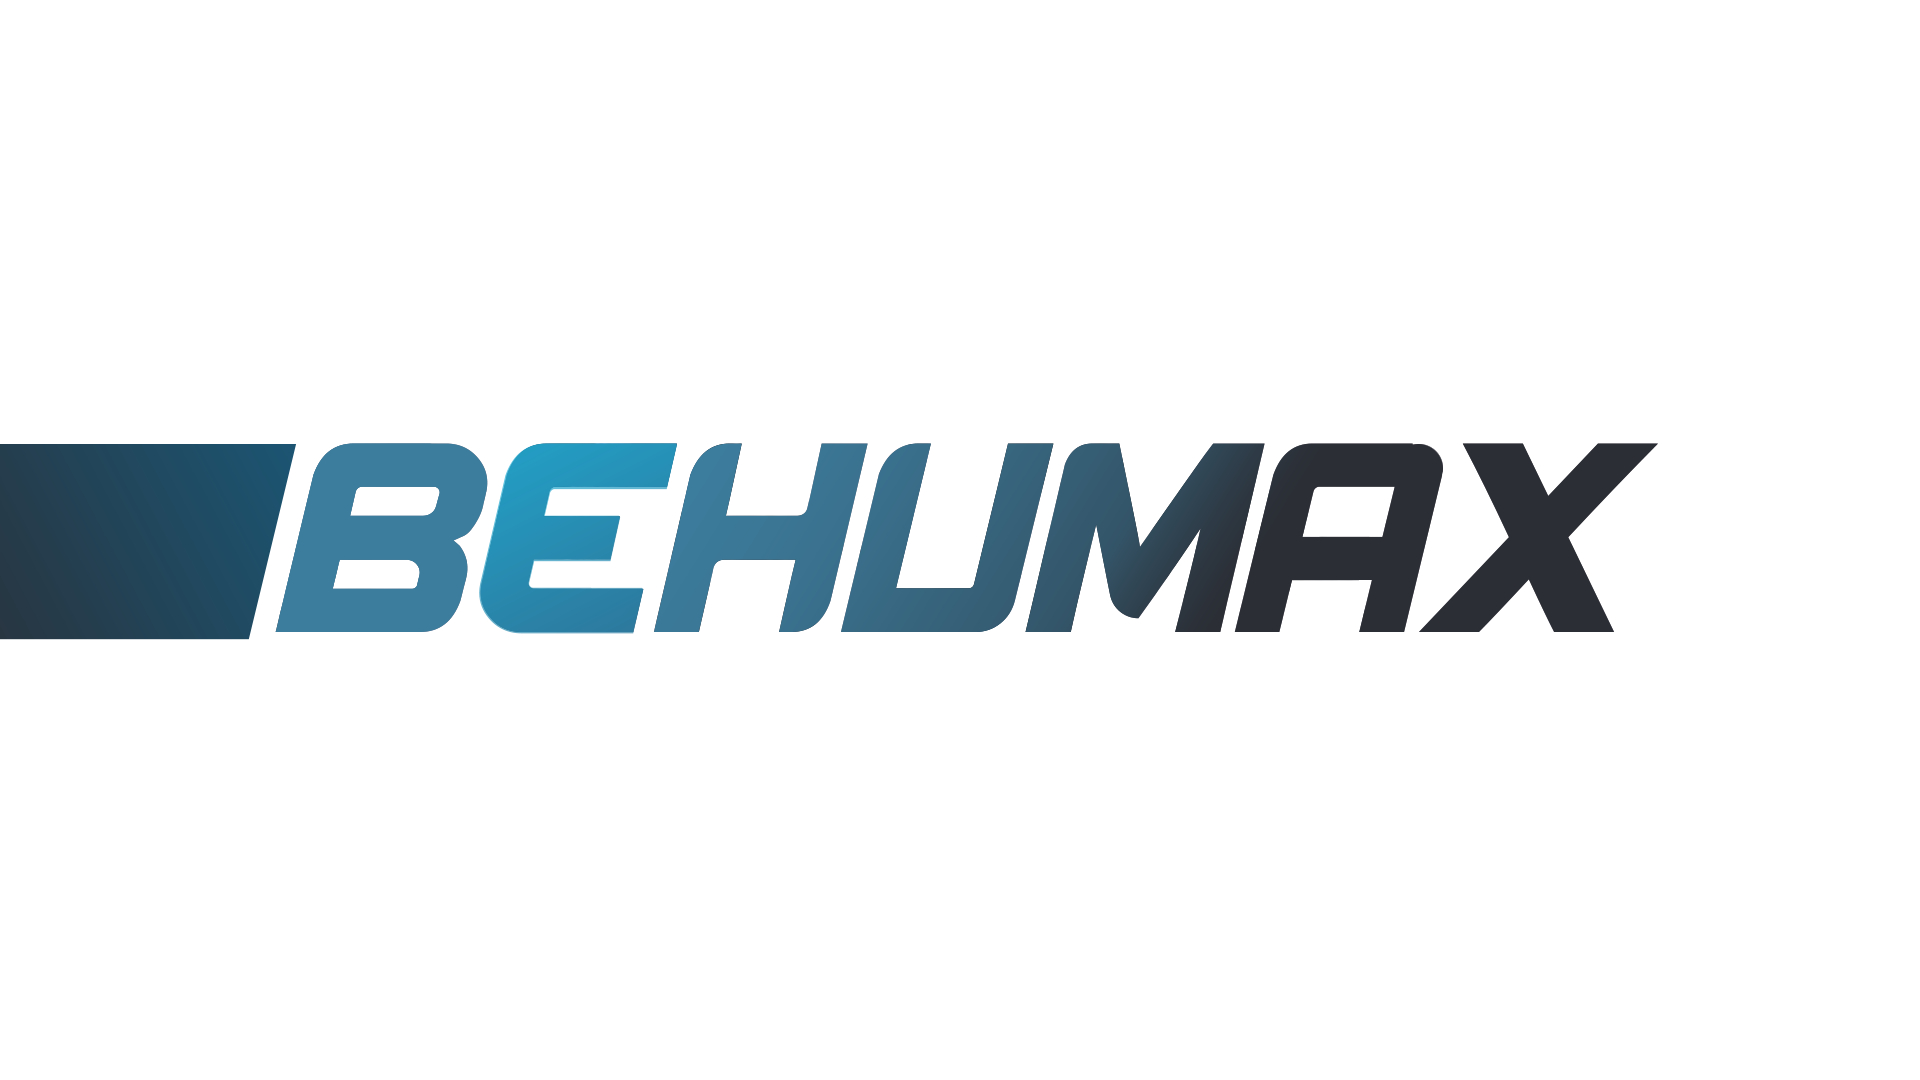 Productos Behumax